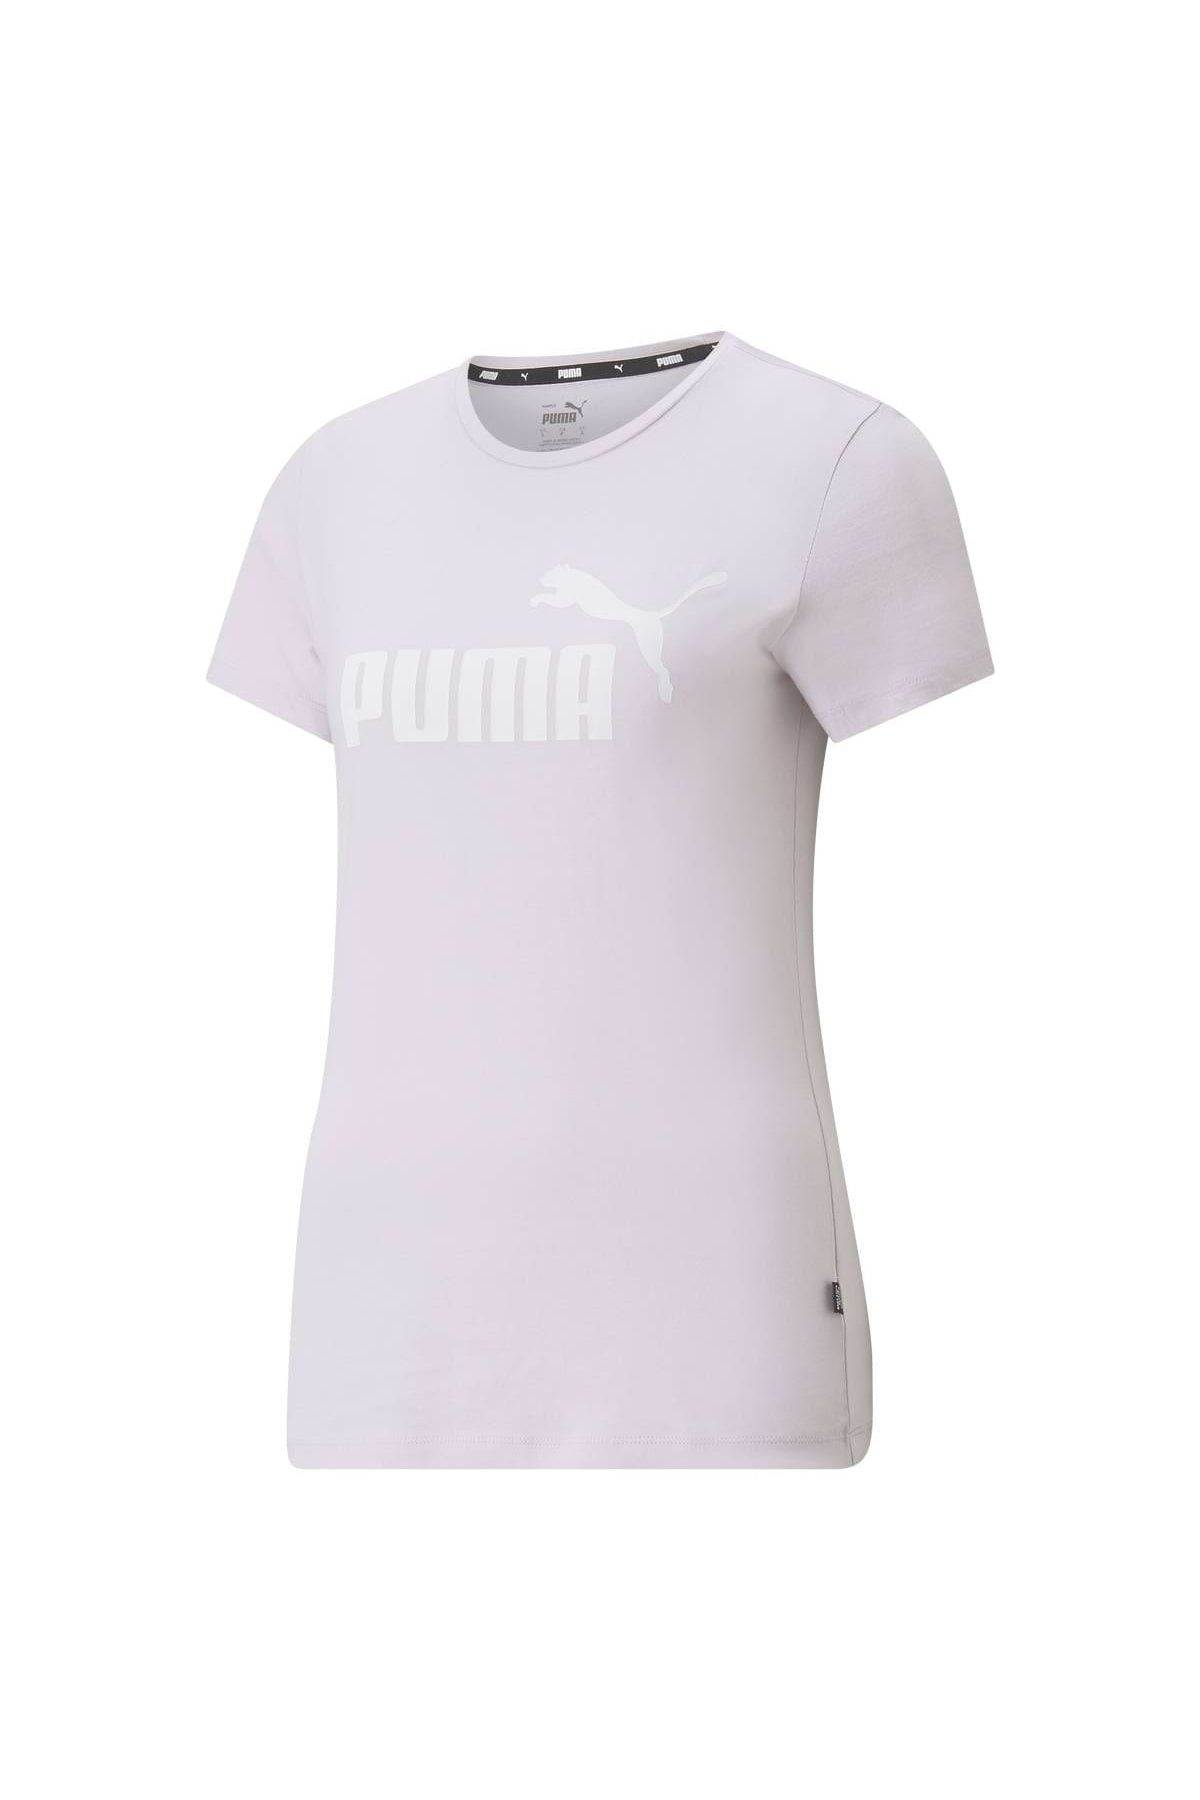 Puma Damen Tee Logo Essentials Kurzarm, Trendyol - T-Shirt uni Rundhals, - (S)